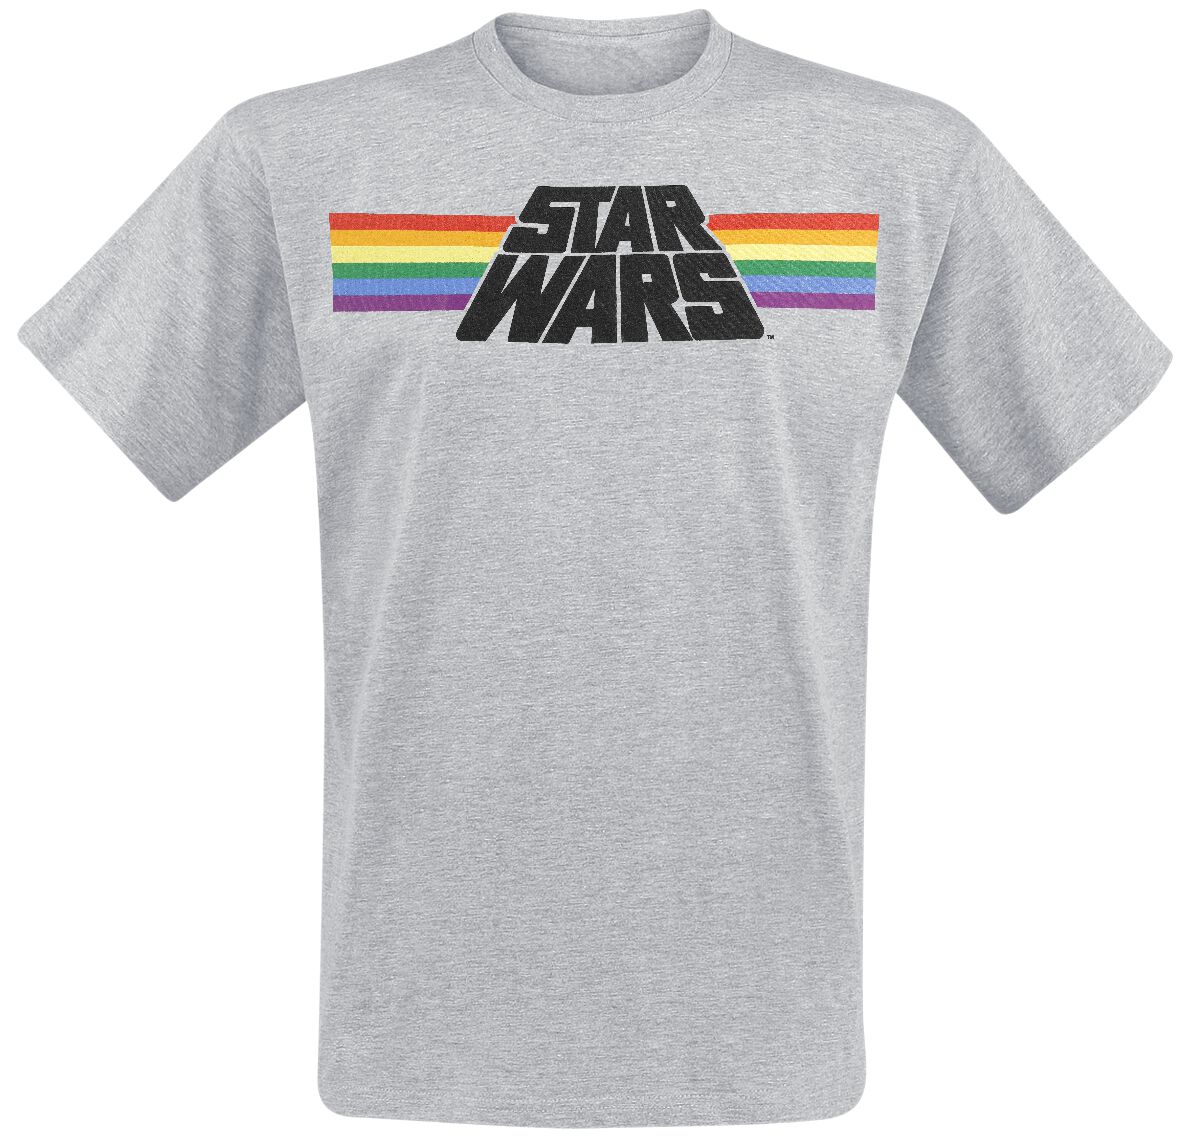 Star Wars Classic Rainbow T-Shirt grau meliert in XXL